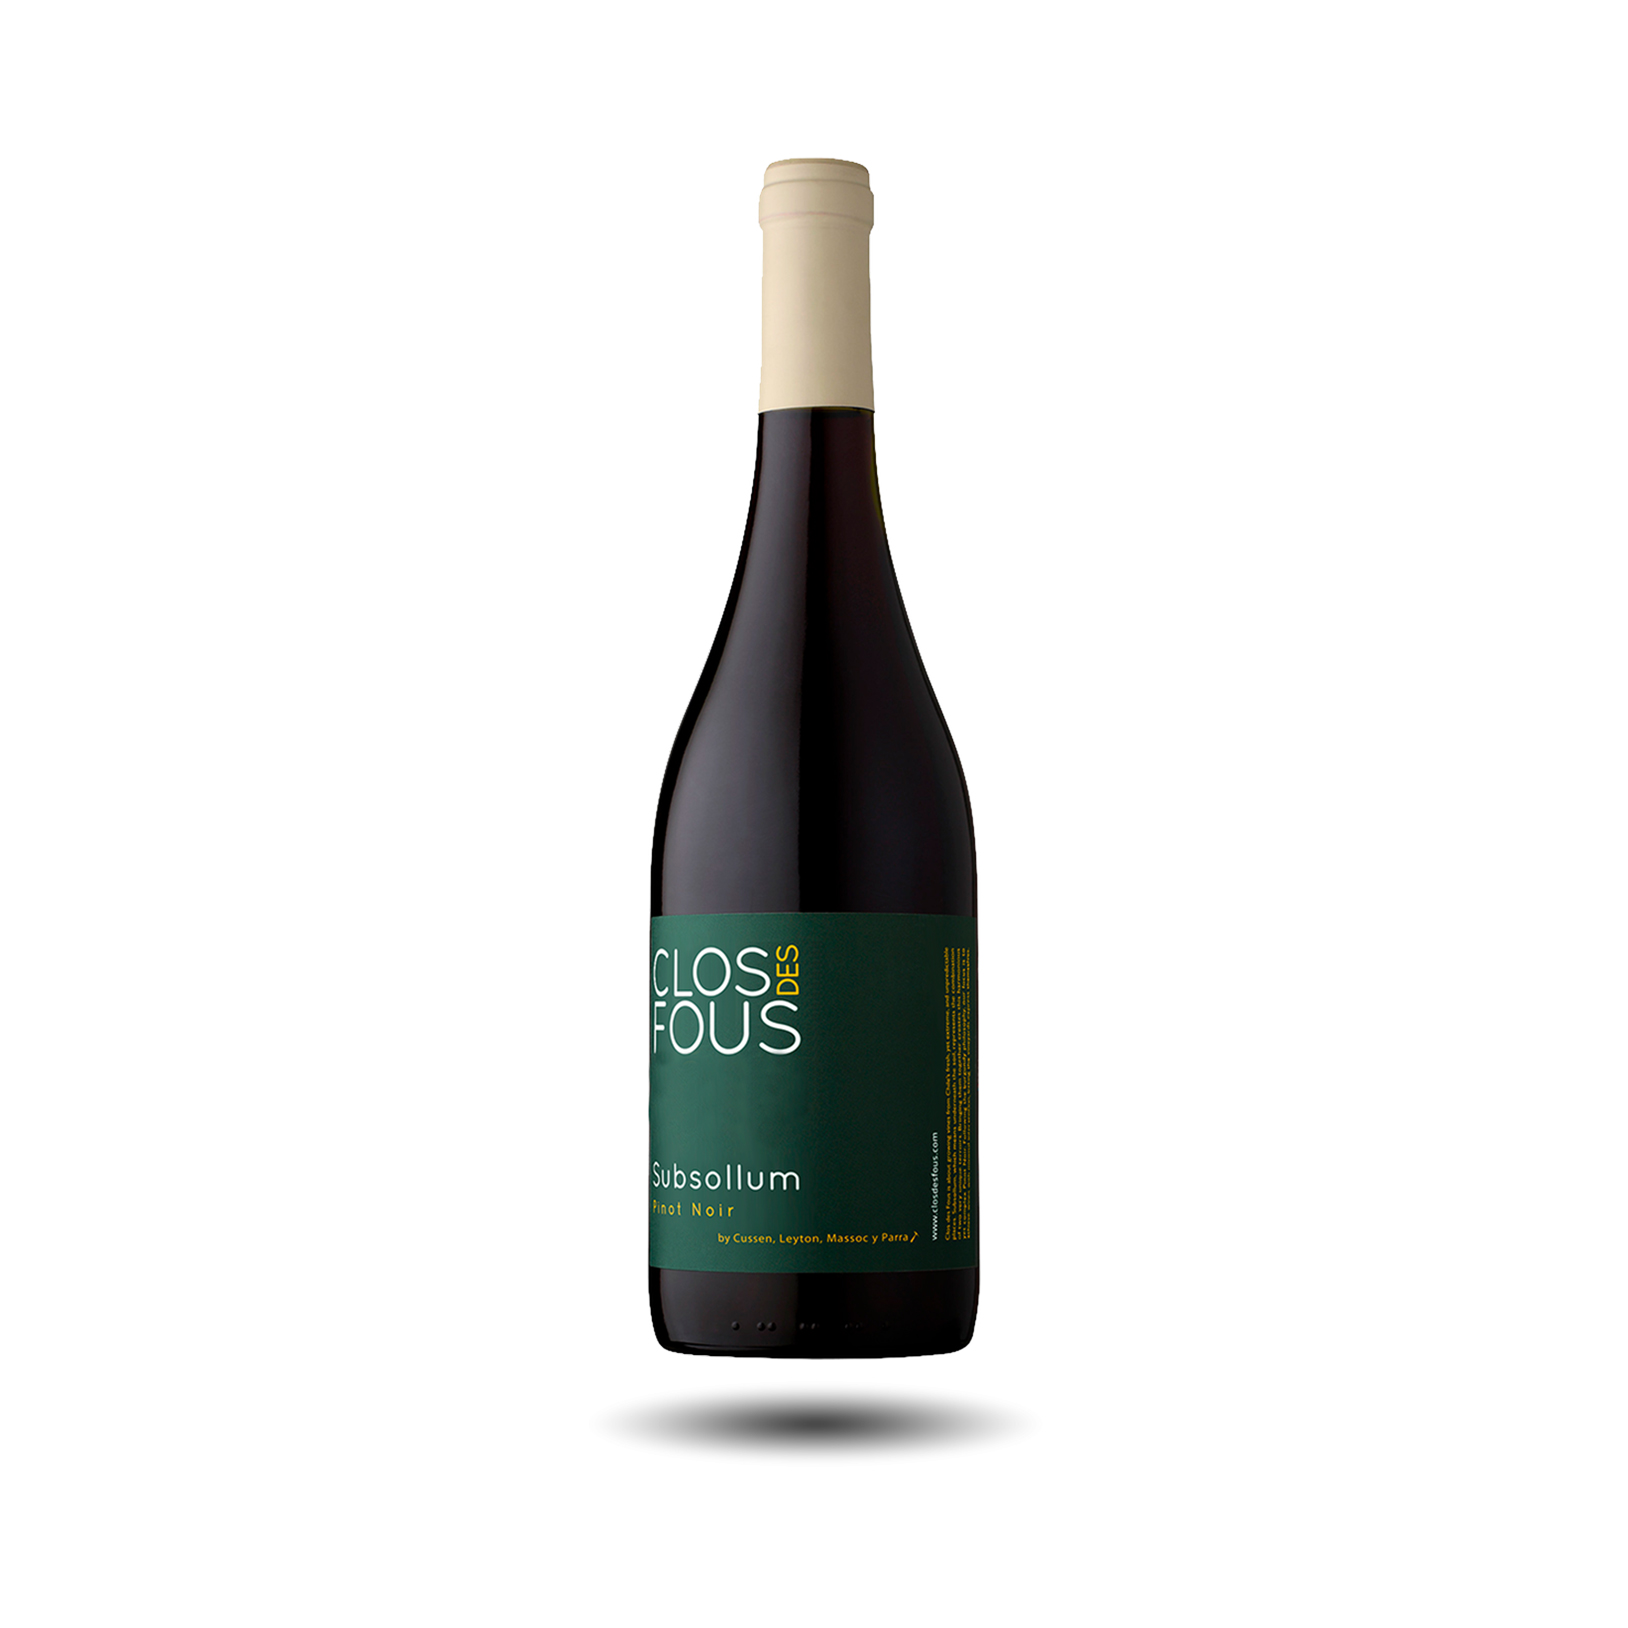 Clos des Fous - Subsollum, Pinot Noir, 2020